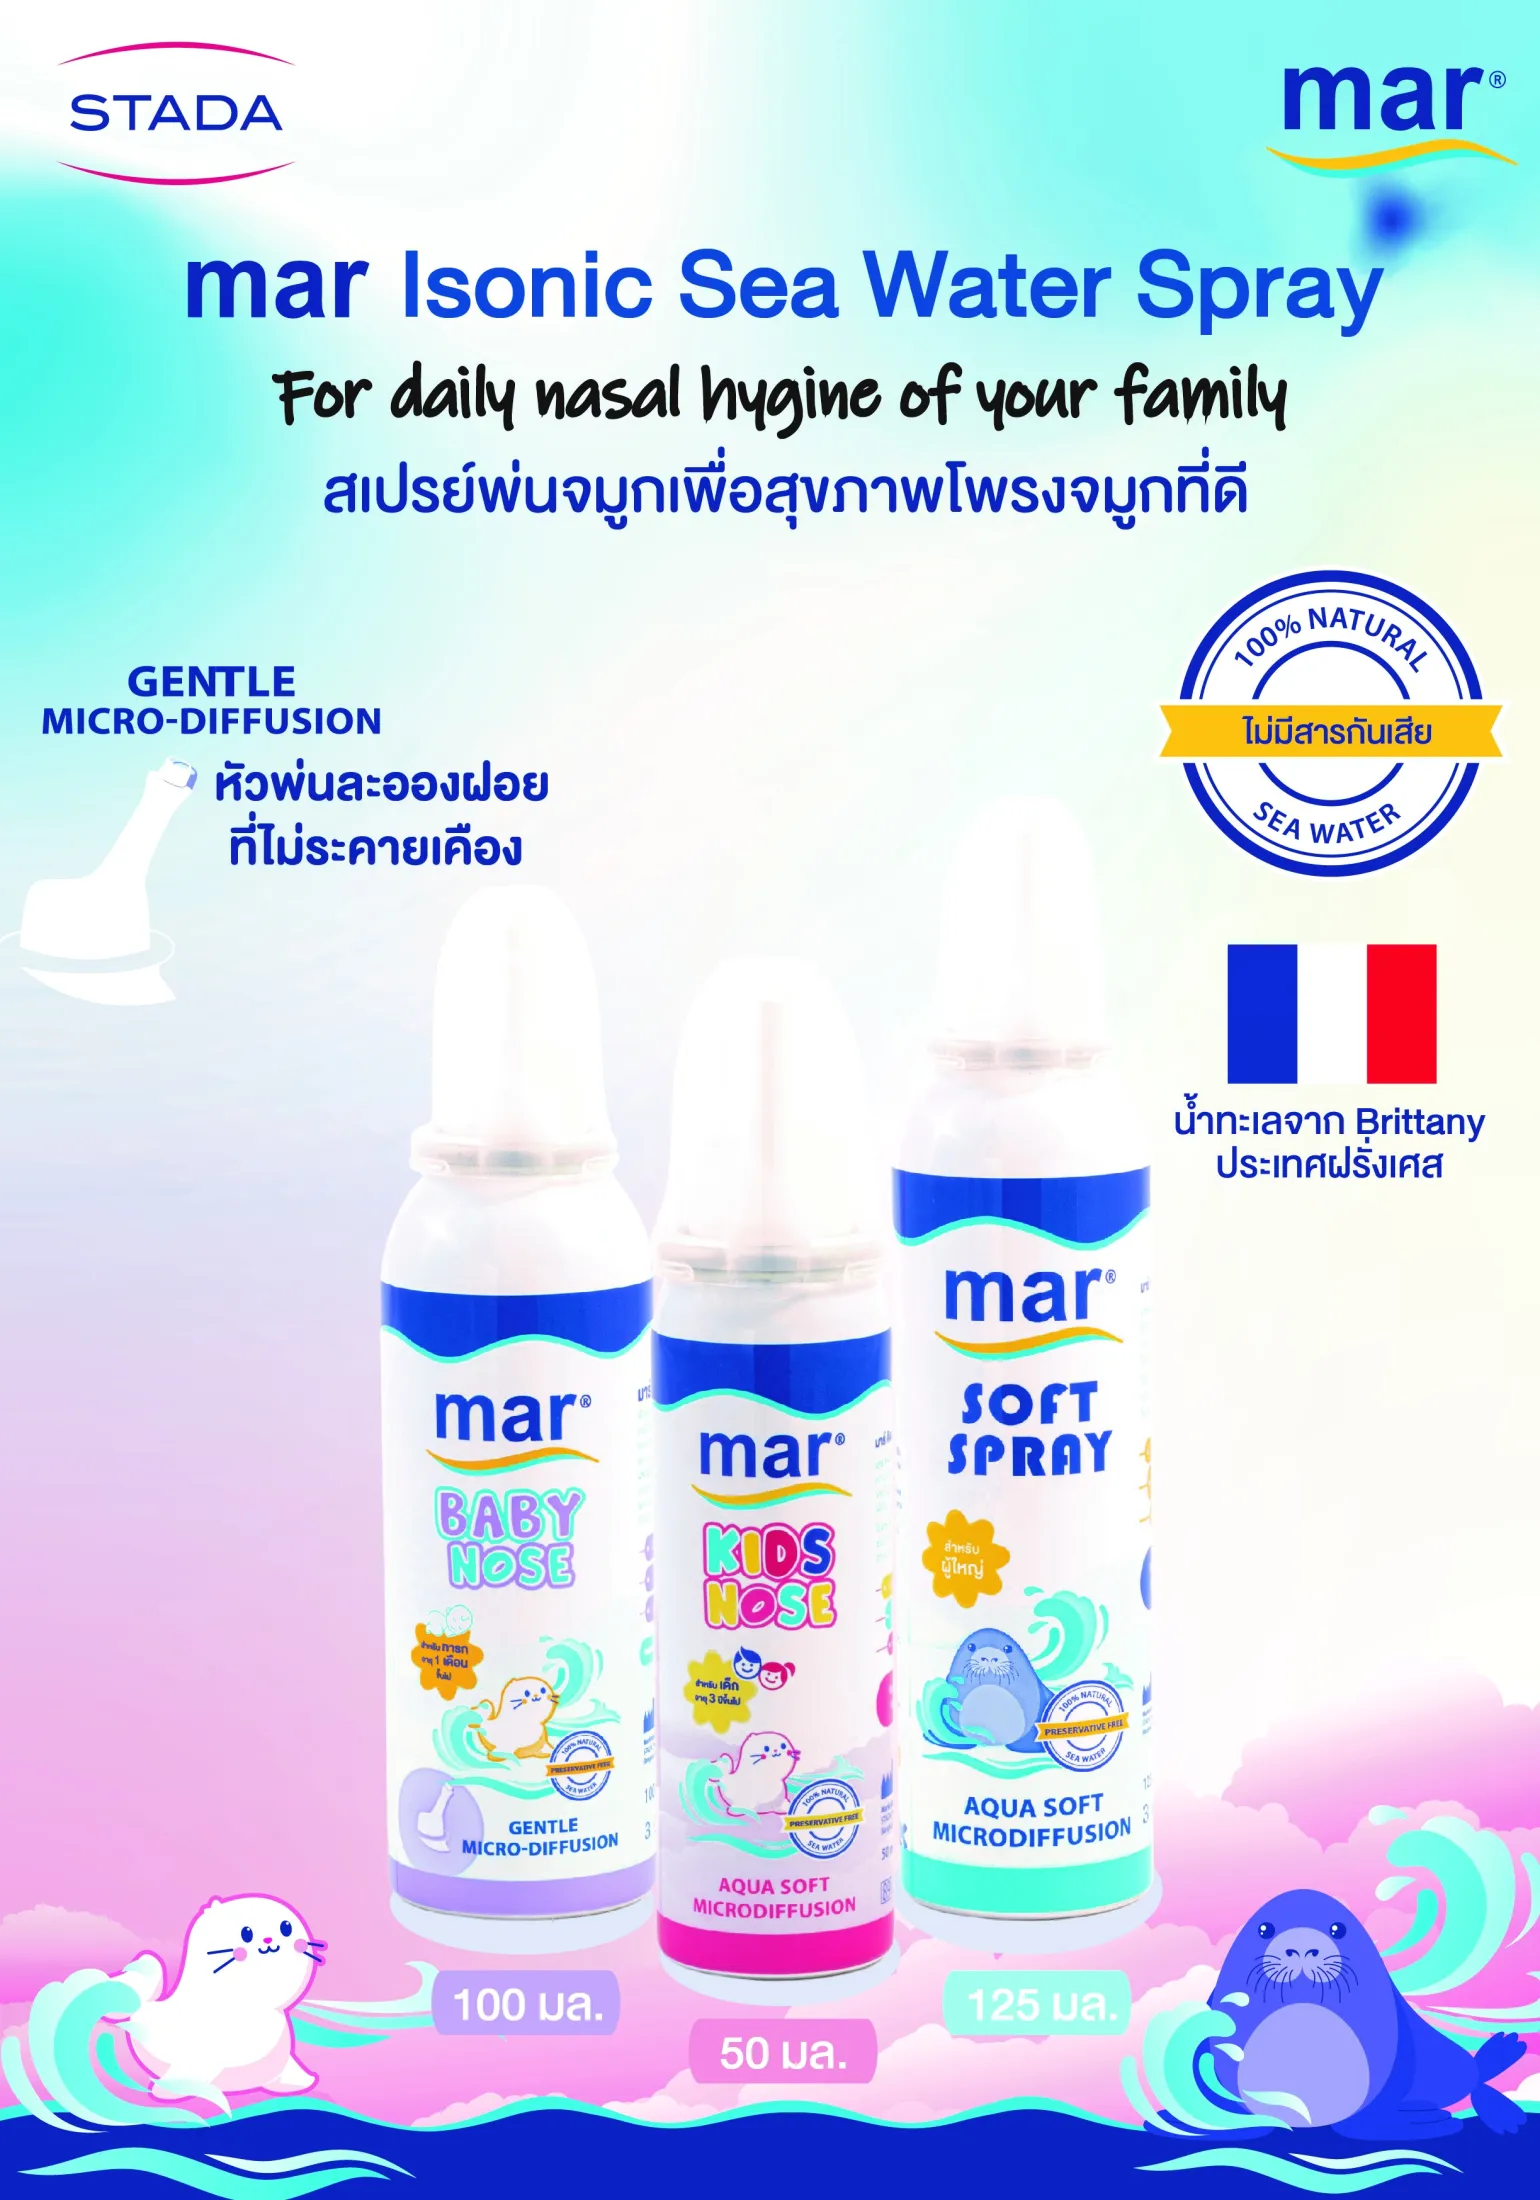 Mar Baby Nose มาร์ เบบี้โนส สเปรย์พ่นจมูก/ล้างจมูก สำหรับเด็กอ่อน ทารก จากน้ำทะเลฝรั่งเศส เพื่อสุขภาพโพรงจมูกที่ดี นำเข้าจากประเทศฝรั่งเศ | Lazada.co.th